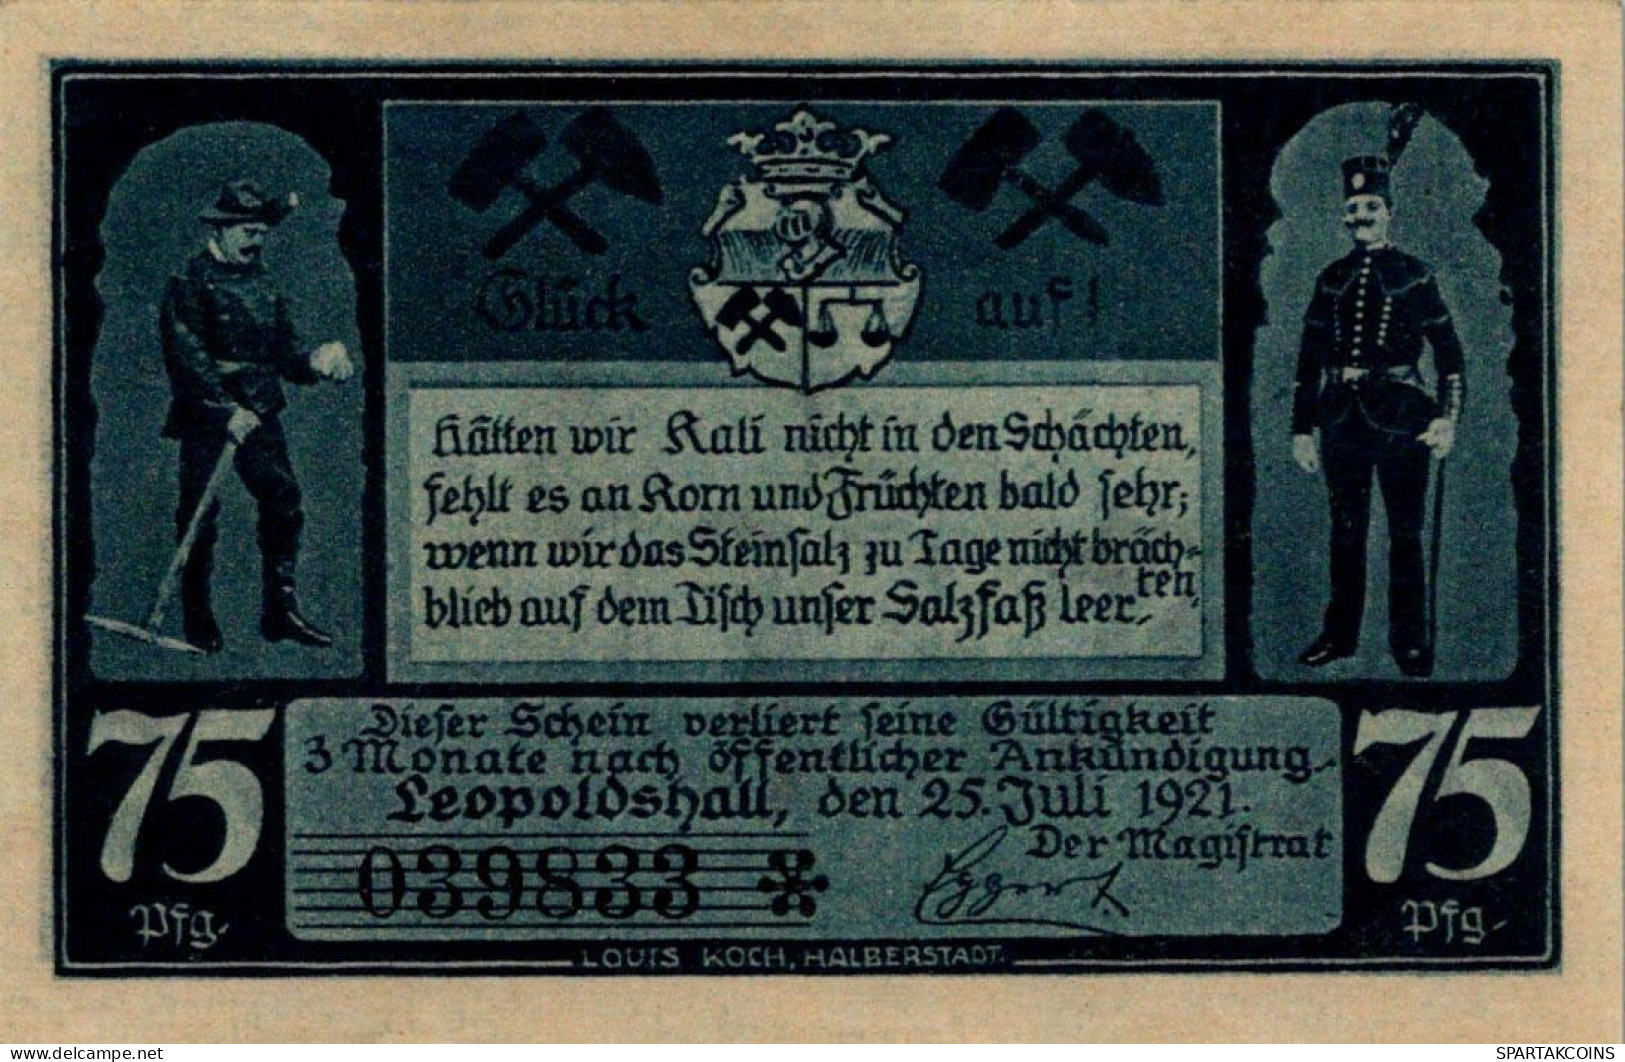 75 PFENNIG 1921 Stadt LEOPOLDSHALL Anhalt UNC DEUTSCHLAND Notgeld #PC167 - [11] Local Banknote Issues